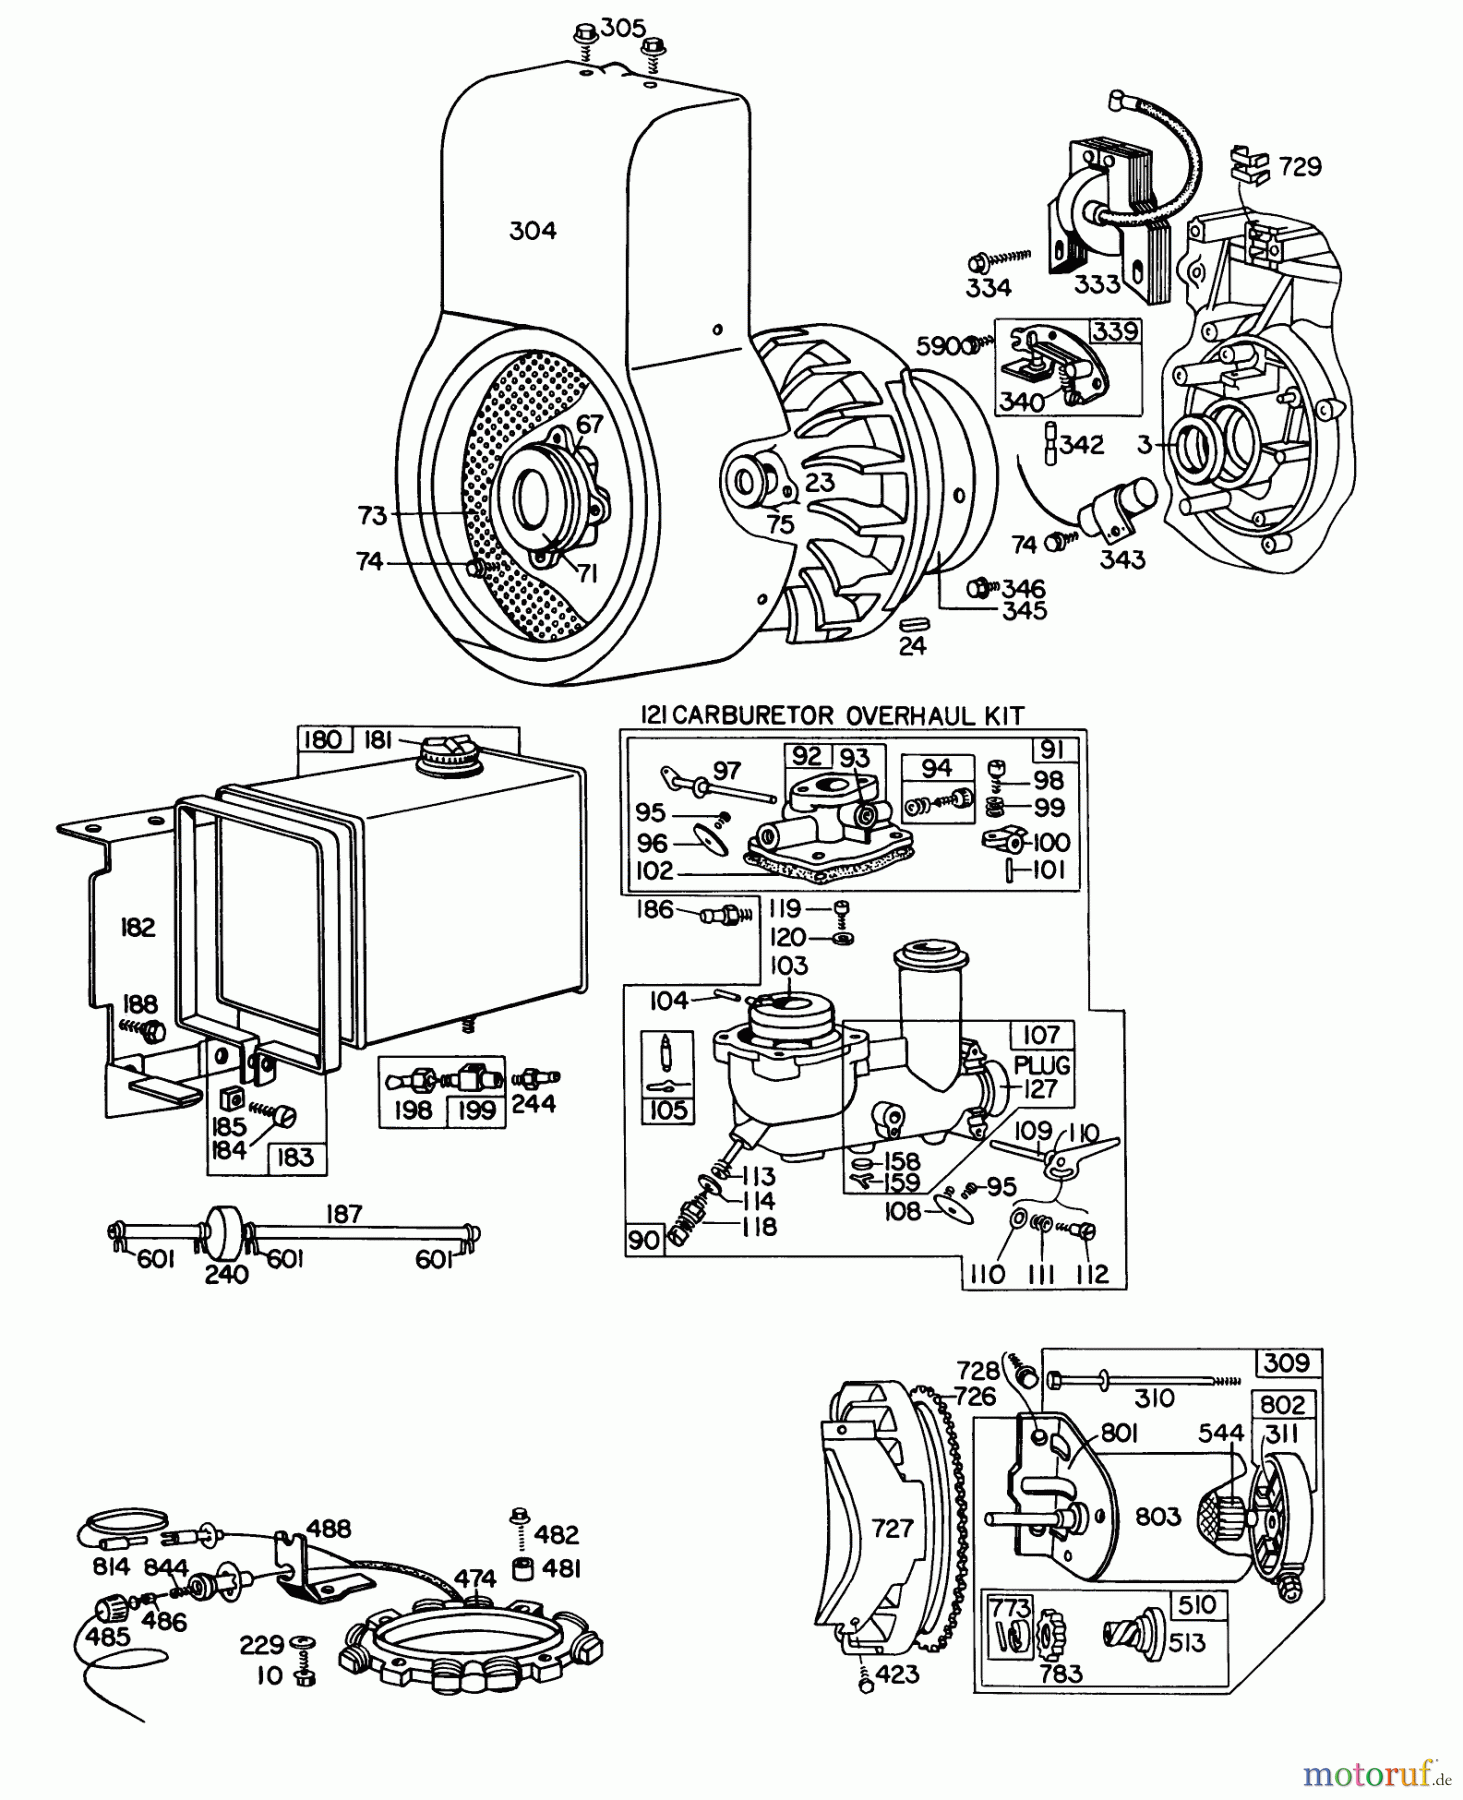  Toro Neu Snow Blowers/Snow Throwers Seite 1 31995 (1032) - Toro 1032 Snowthrower, 1976 (6000001-6999999) ENGINE BRIGGS & STRATTON MODEL NO. 251417 TYPE NO. 0140-01 #2